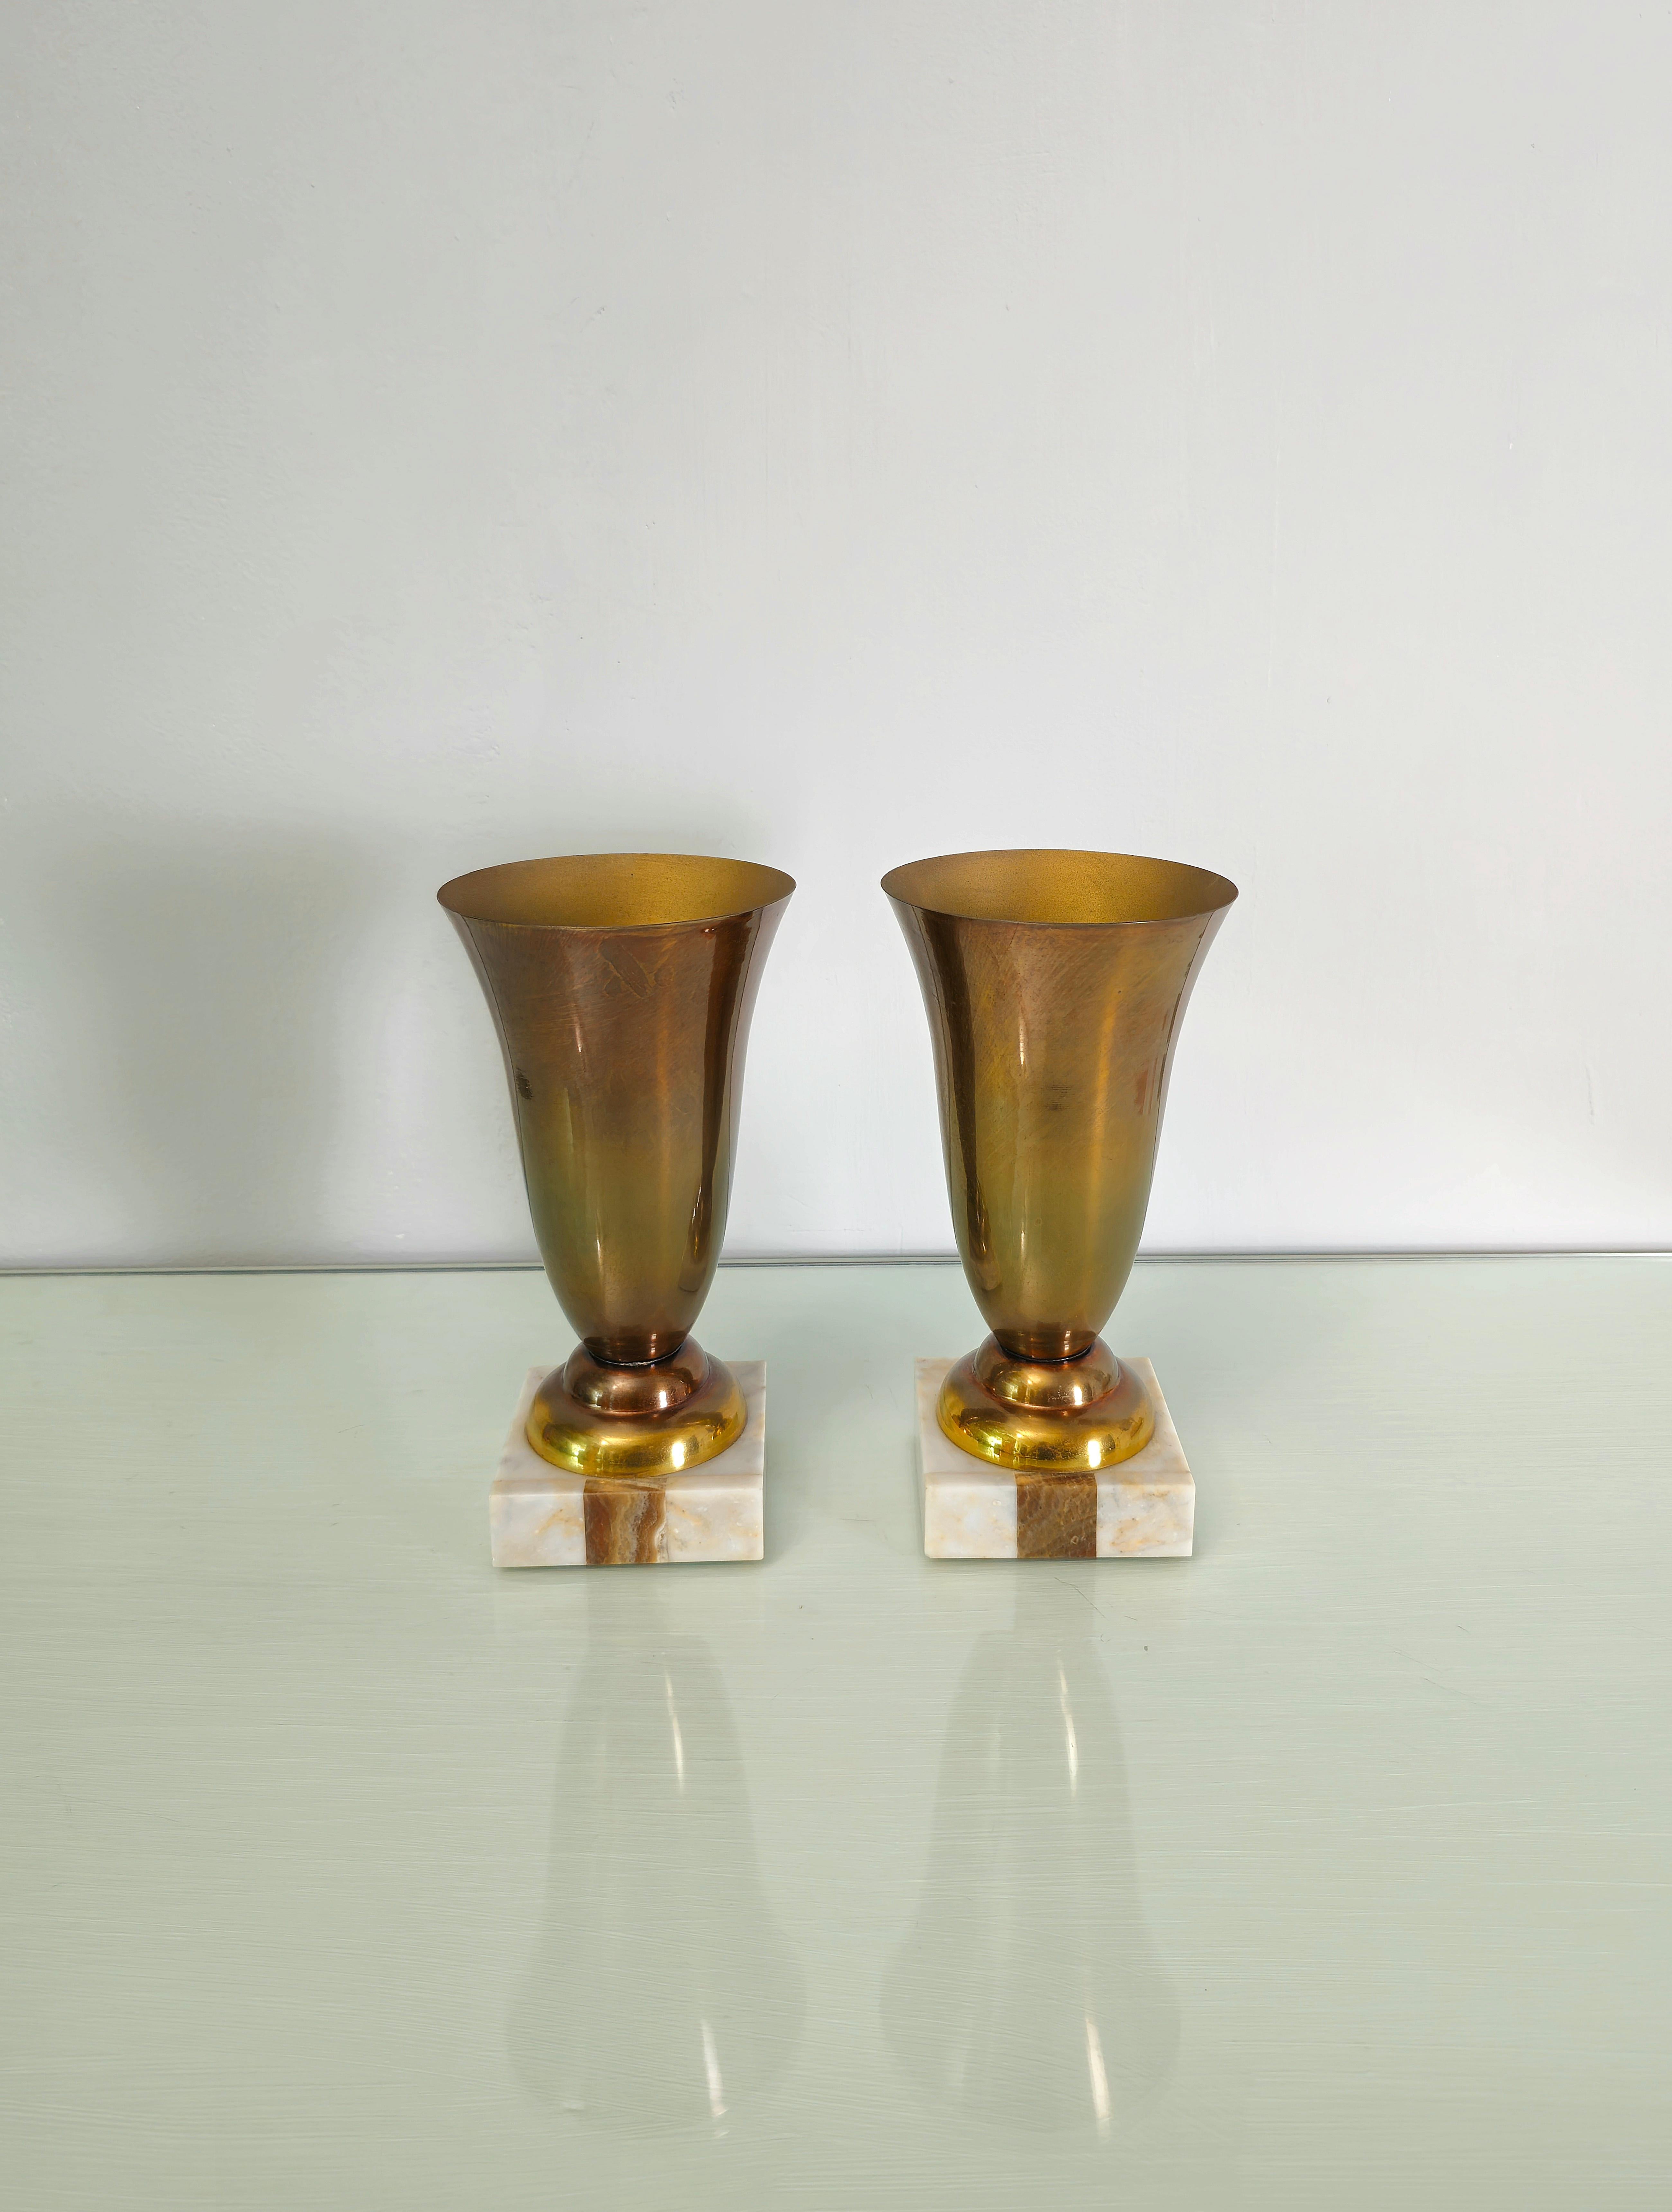 Ensemble de 2 vases produits en Italie dans les années 60.
Chaque vase individuel est fabriqué en aluminium bruni avec une base carrée en marbre.



Note : Nous essayons d'offrir à nos clients un excellent service, même pour les envois dans le monde